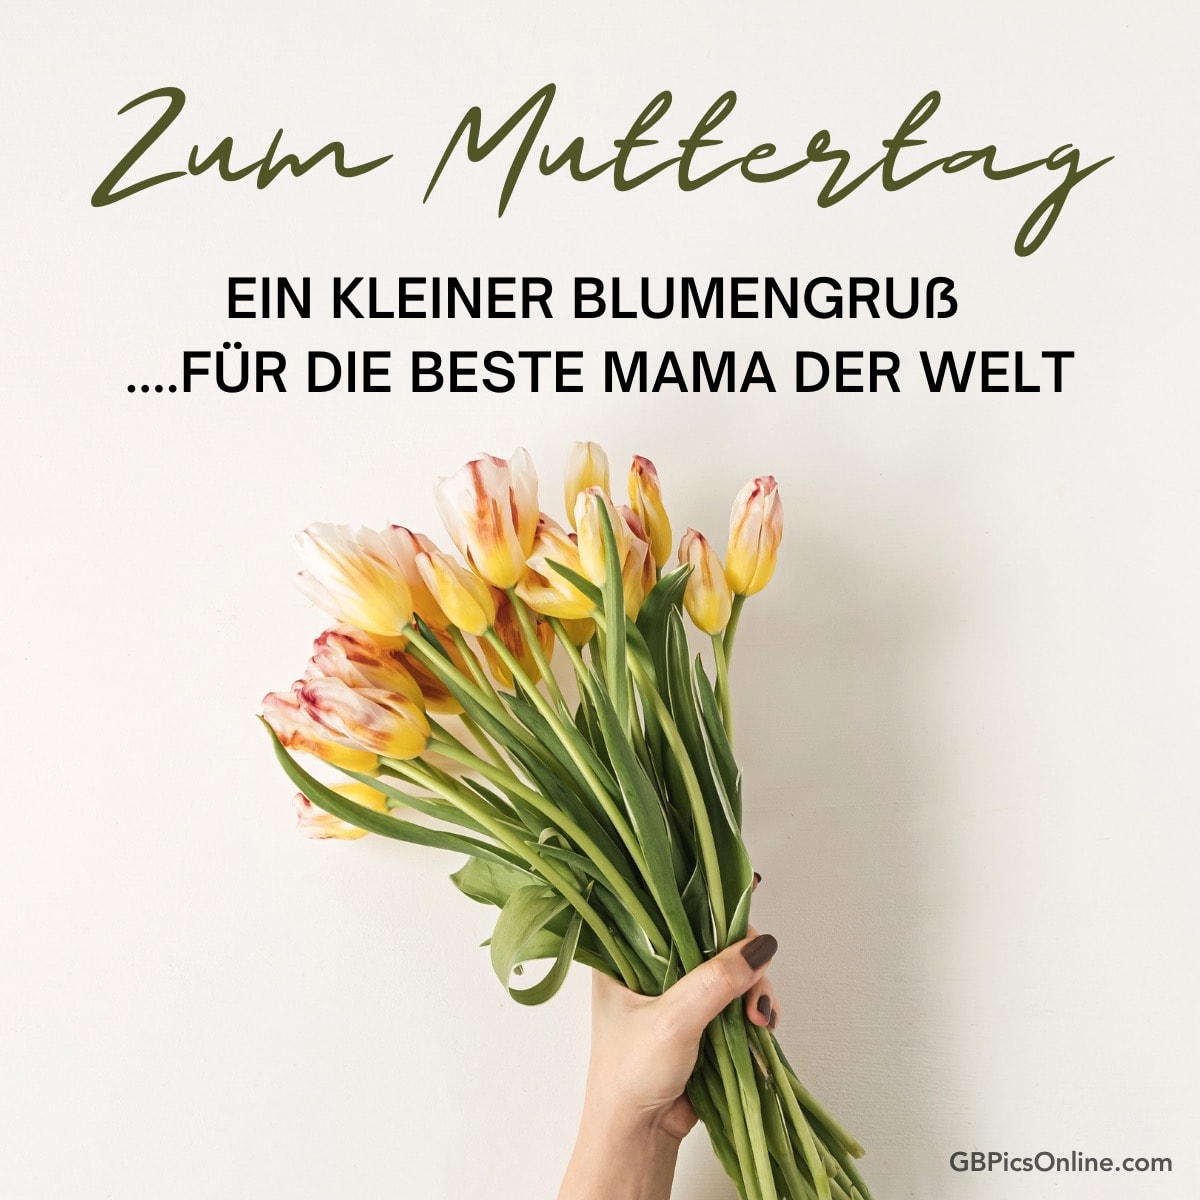 Zum Muttertag: Blumengruß für die beste Mama. Hand hält Tulpen auf hellem Hintergrund